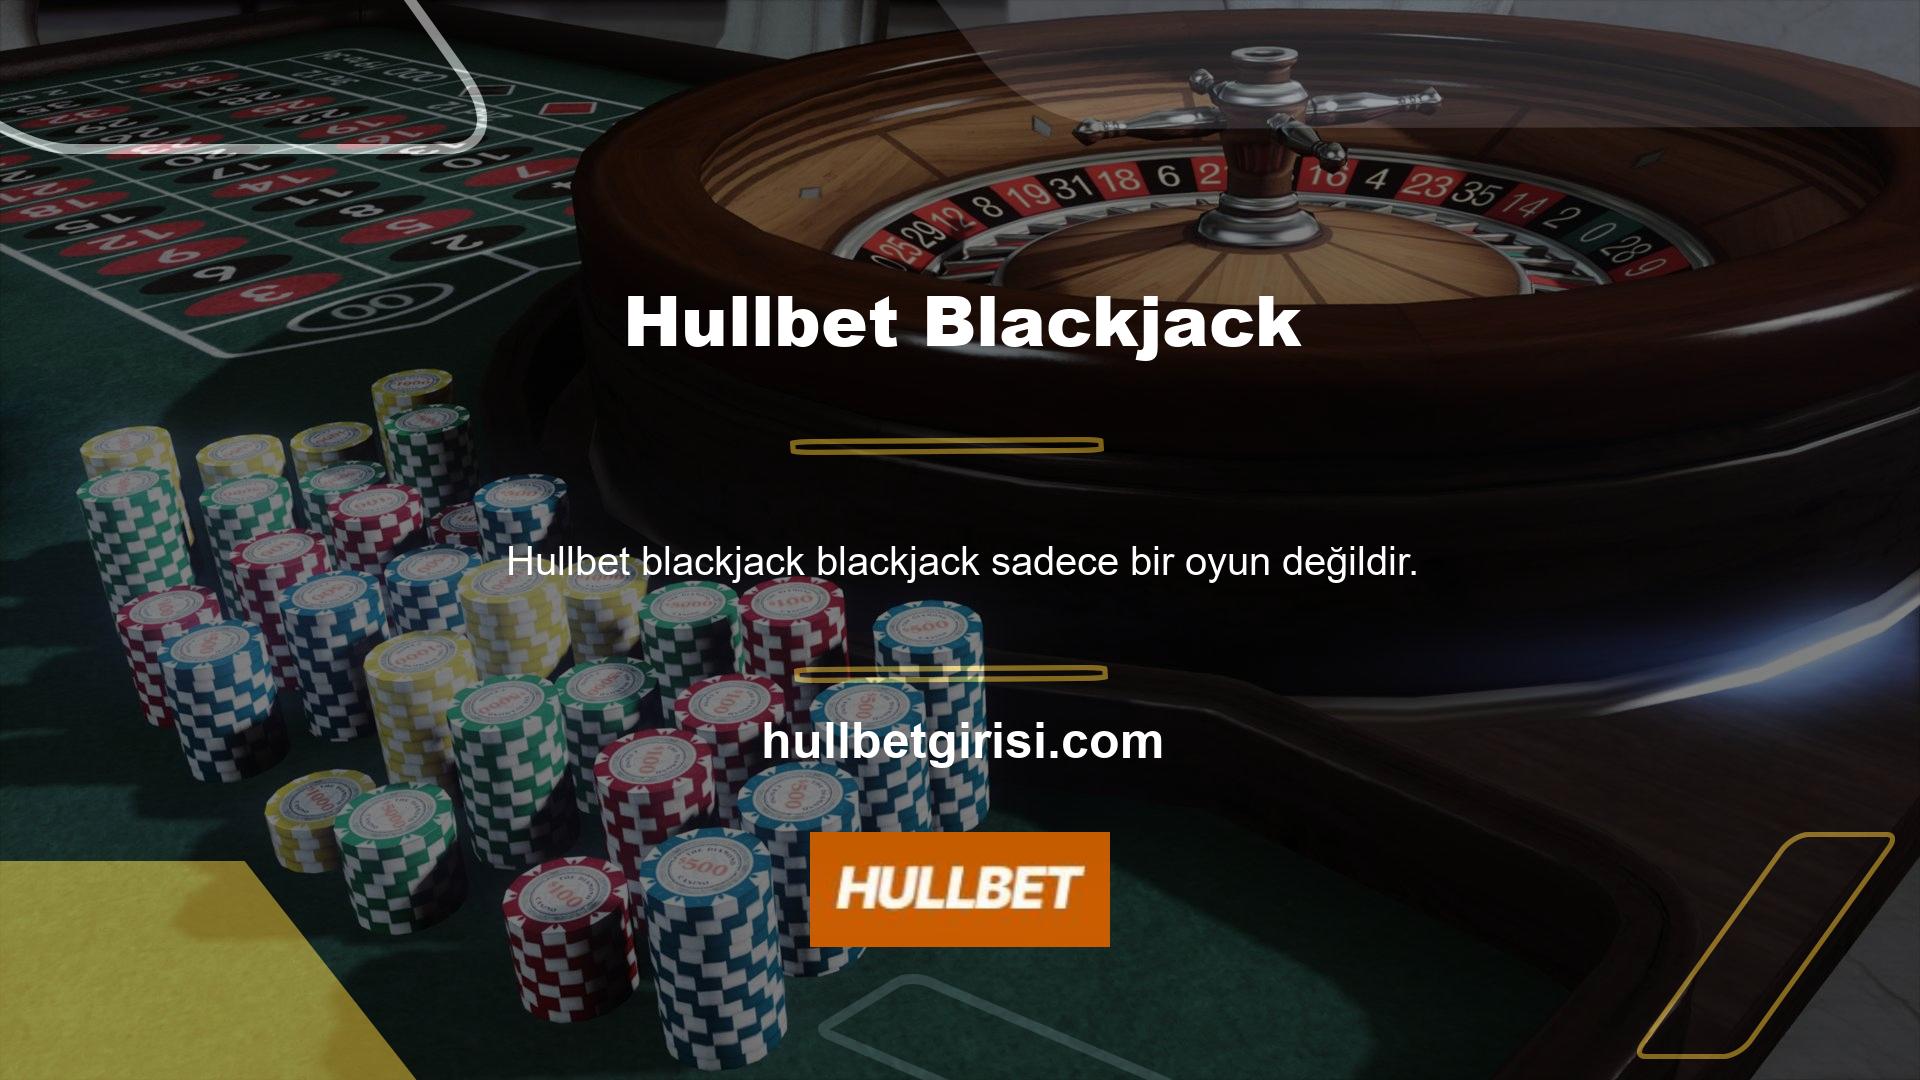 Hullbet oyun sitesi çok çeşitli blackjack oyunları sunmaktadır